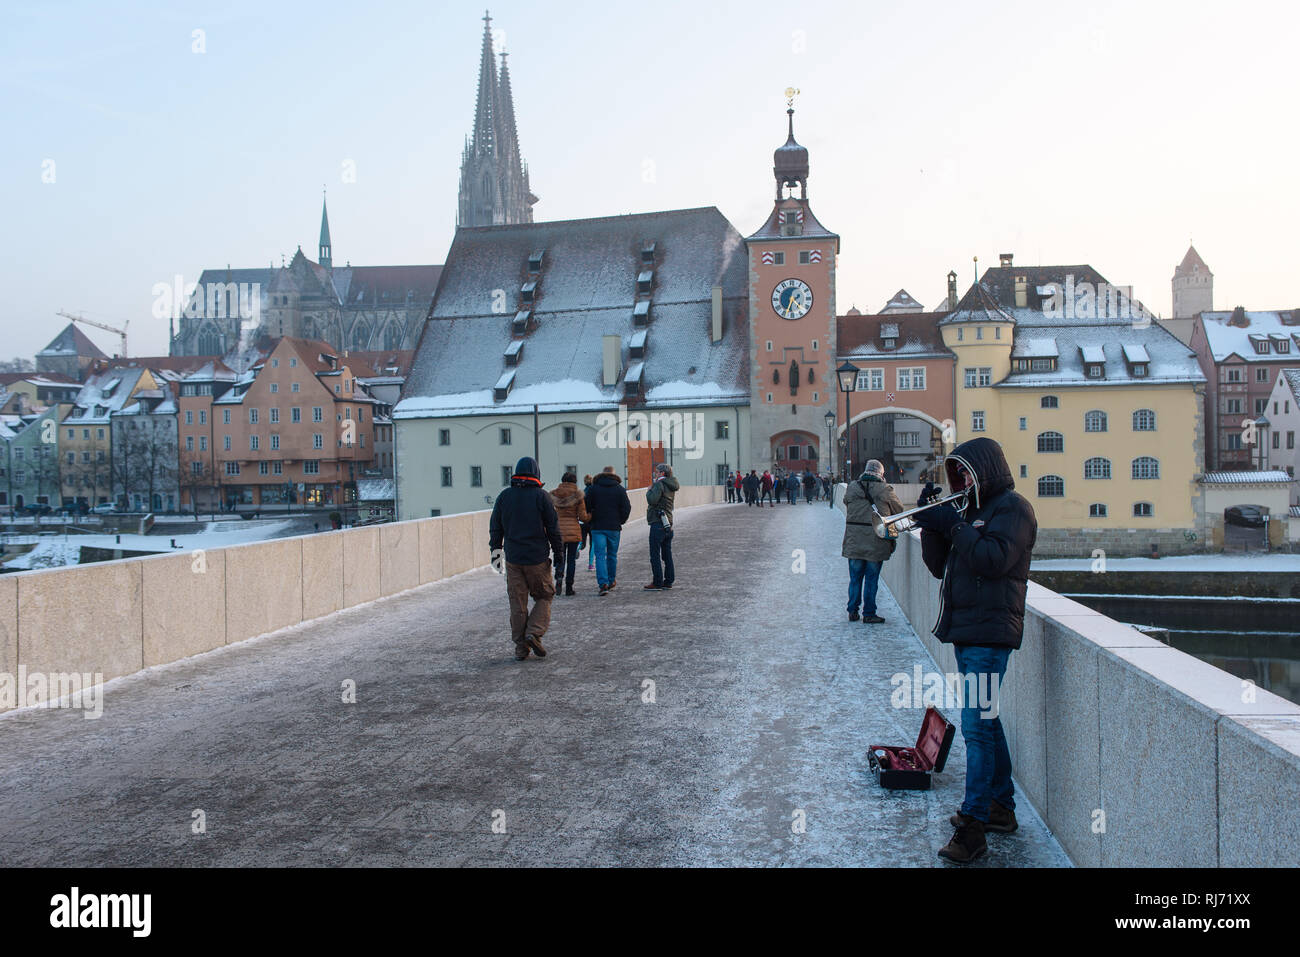 Im Januar 2017 war es so kalt in Deutschland, dass die Donau in Regensburg zugefroren ist, sodass man darauf Schlittschuhlaufen konnte. Stock Photo